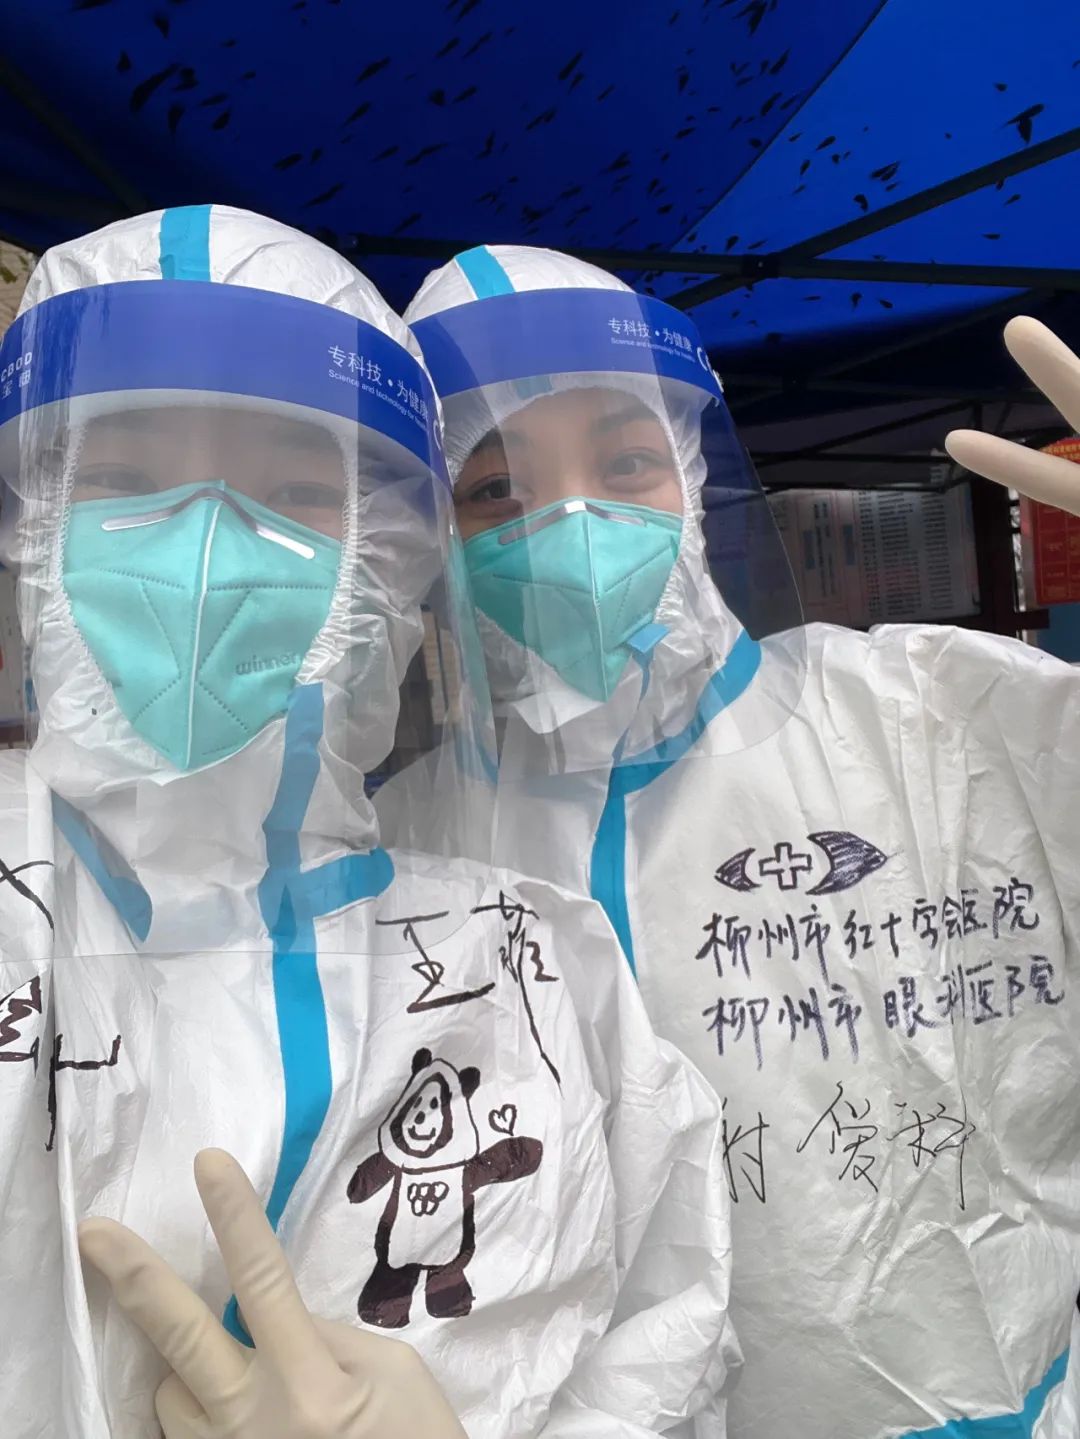 一把伞撑起寒冬暖意——柳州市红十字会医院「准 00 后」护士救助菜市昏迷老人